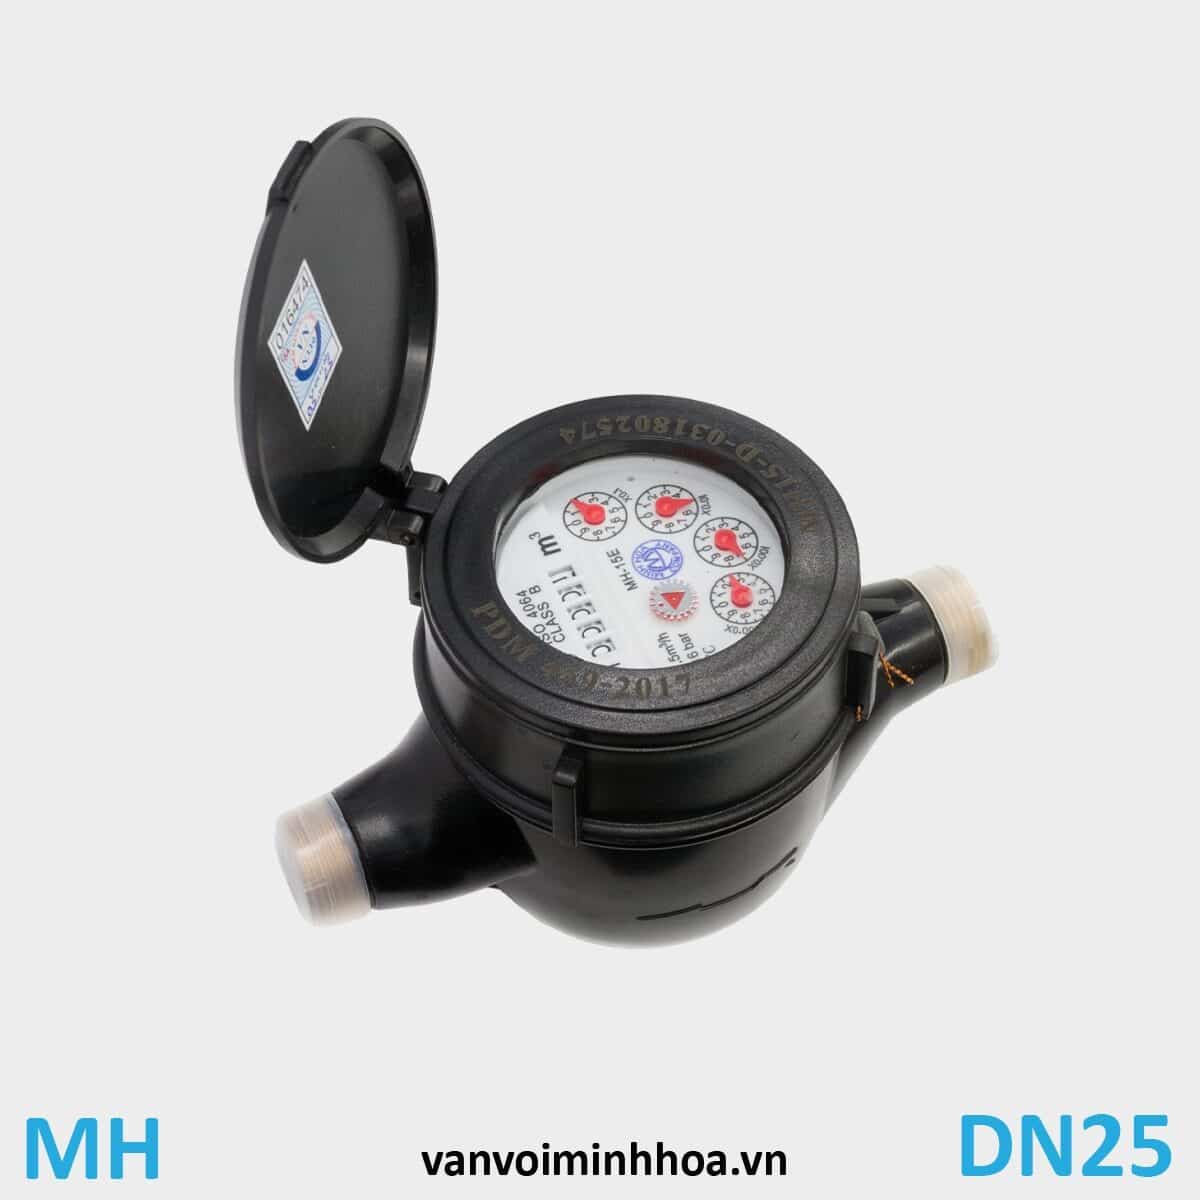 Đồng hồ nước Mình Hòa MH phi 32 DN25 Thân nhựa